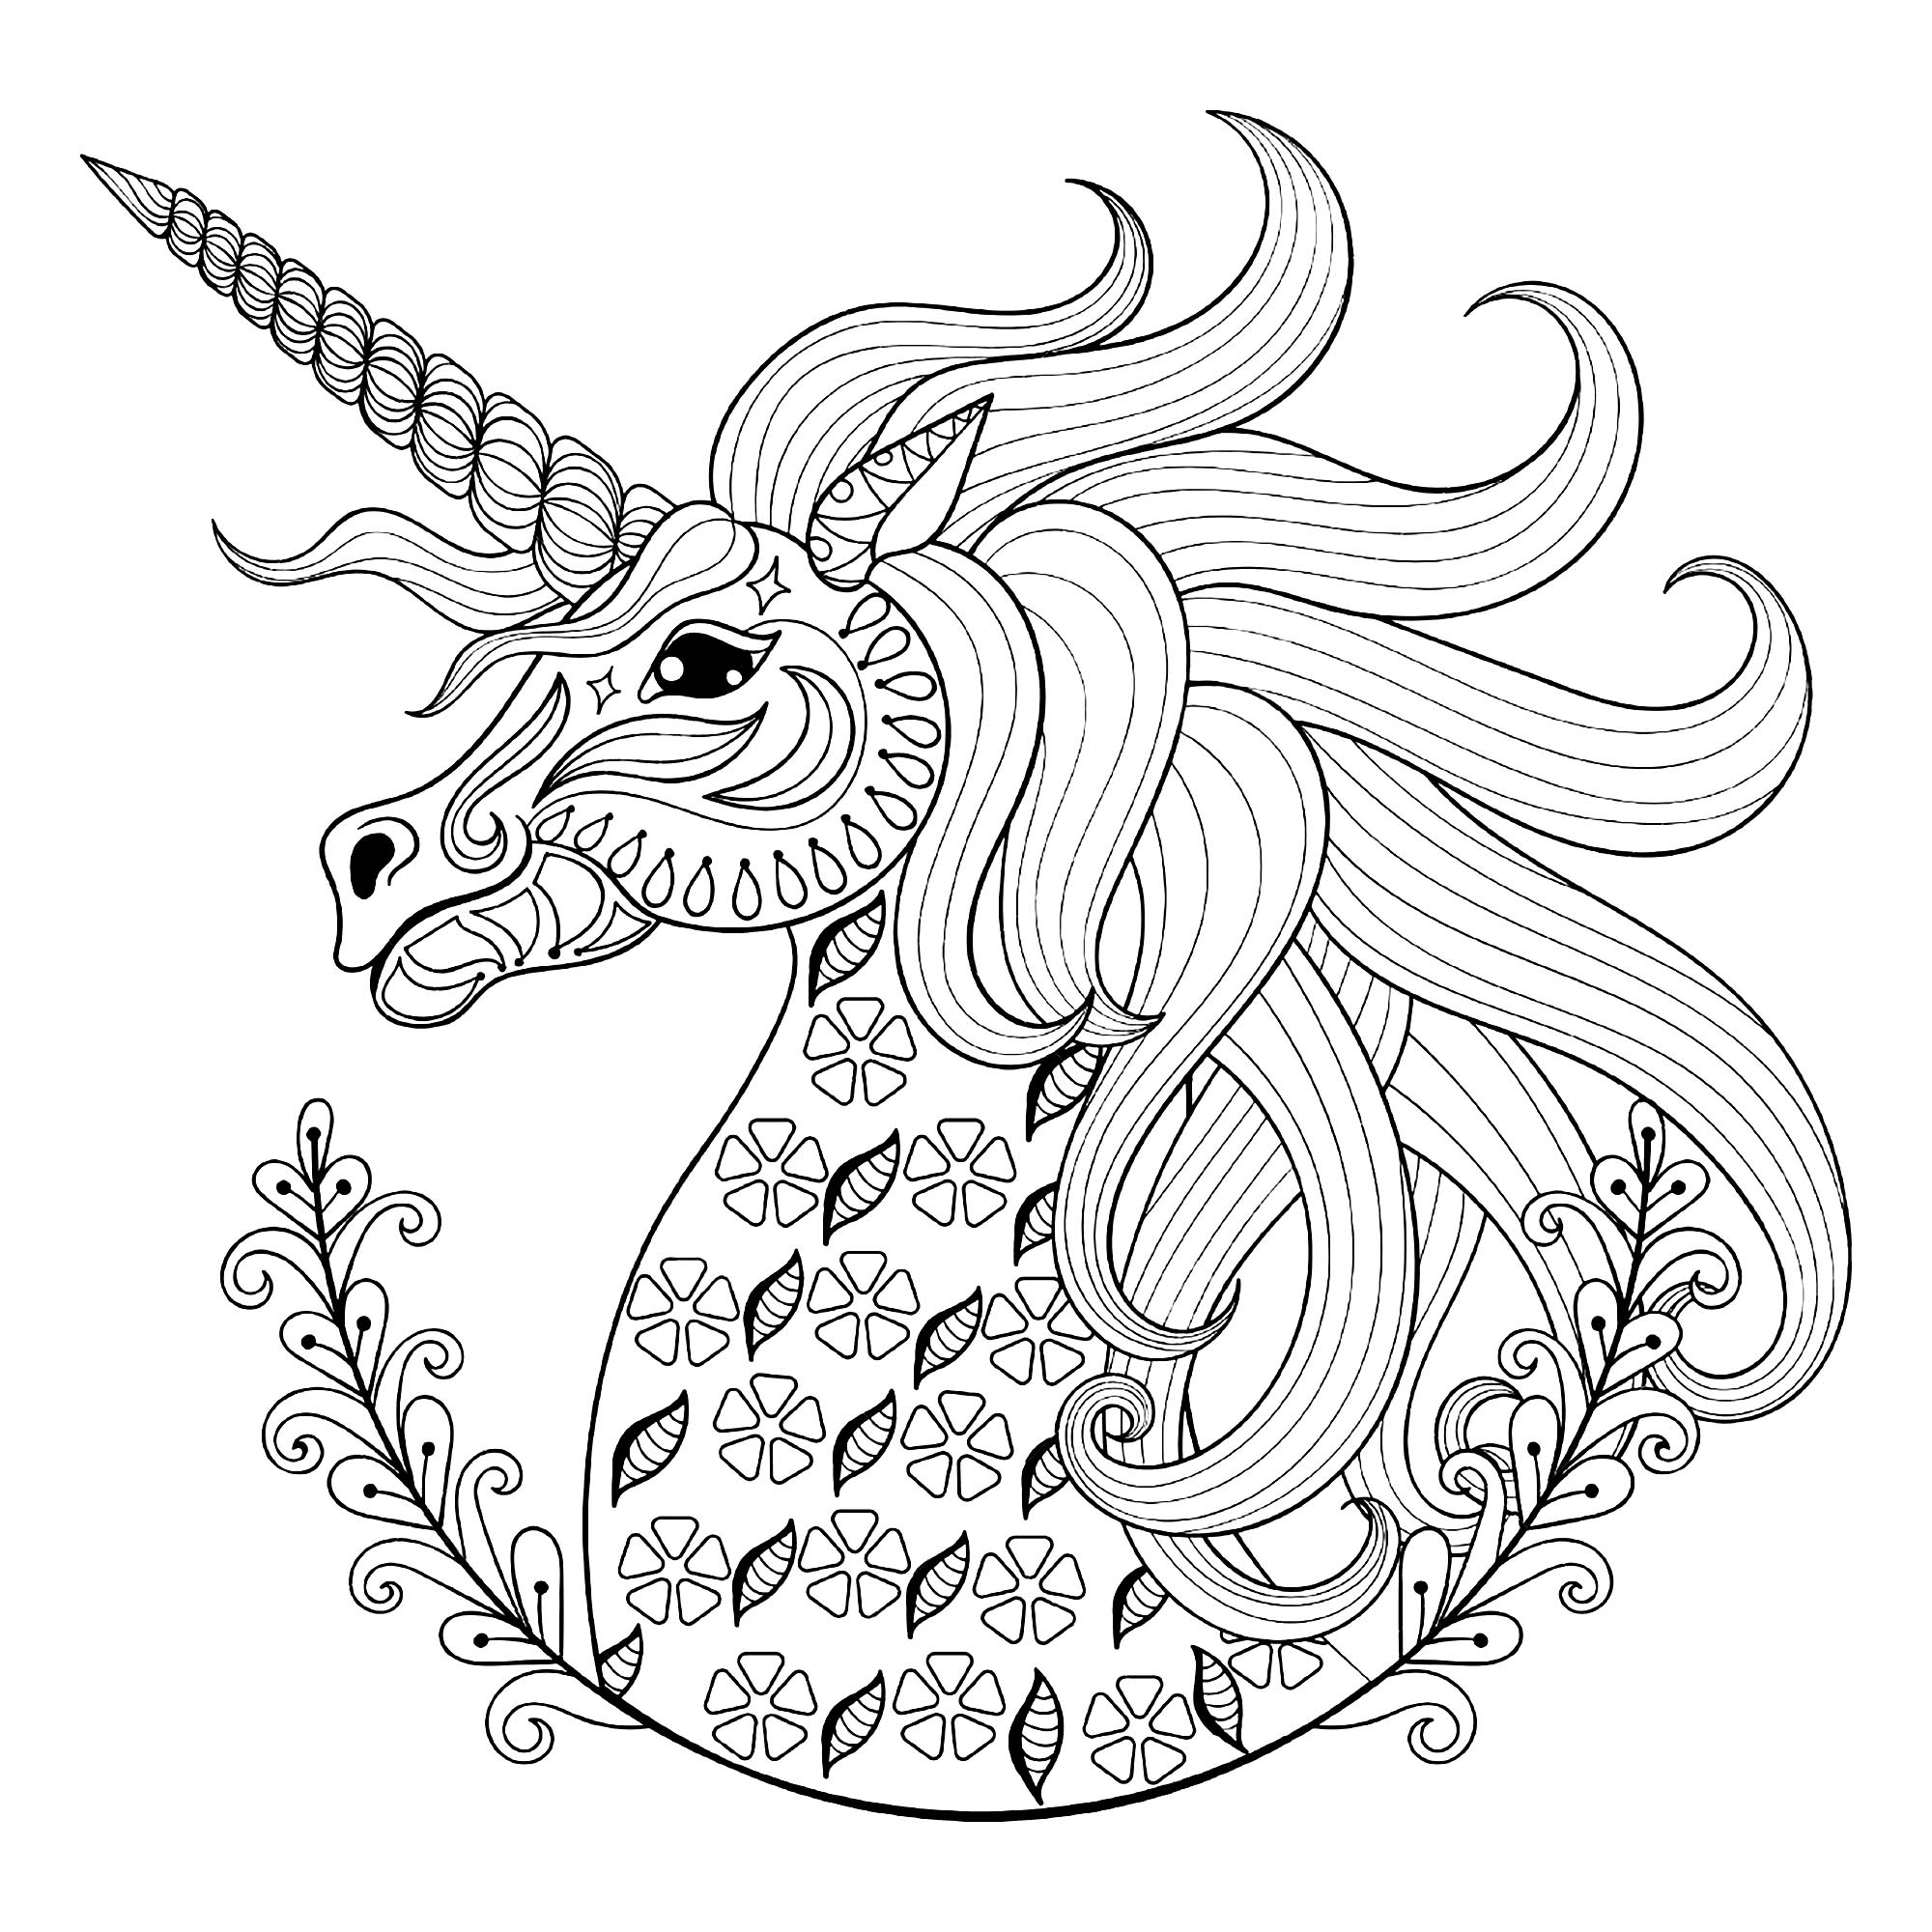 Divertidas páginas de unicornios para imprimir y colorear